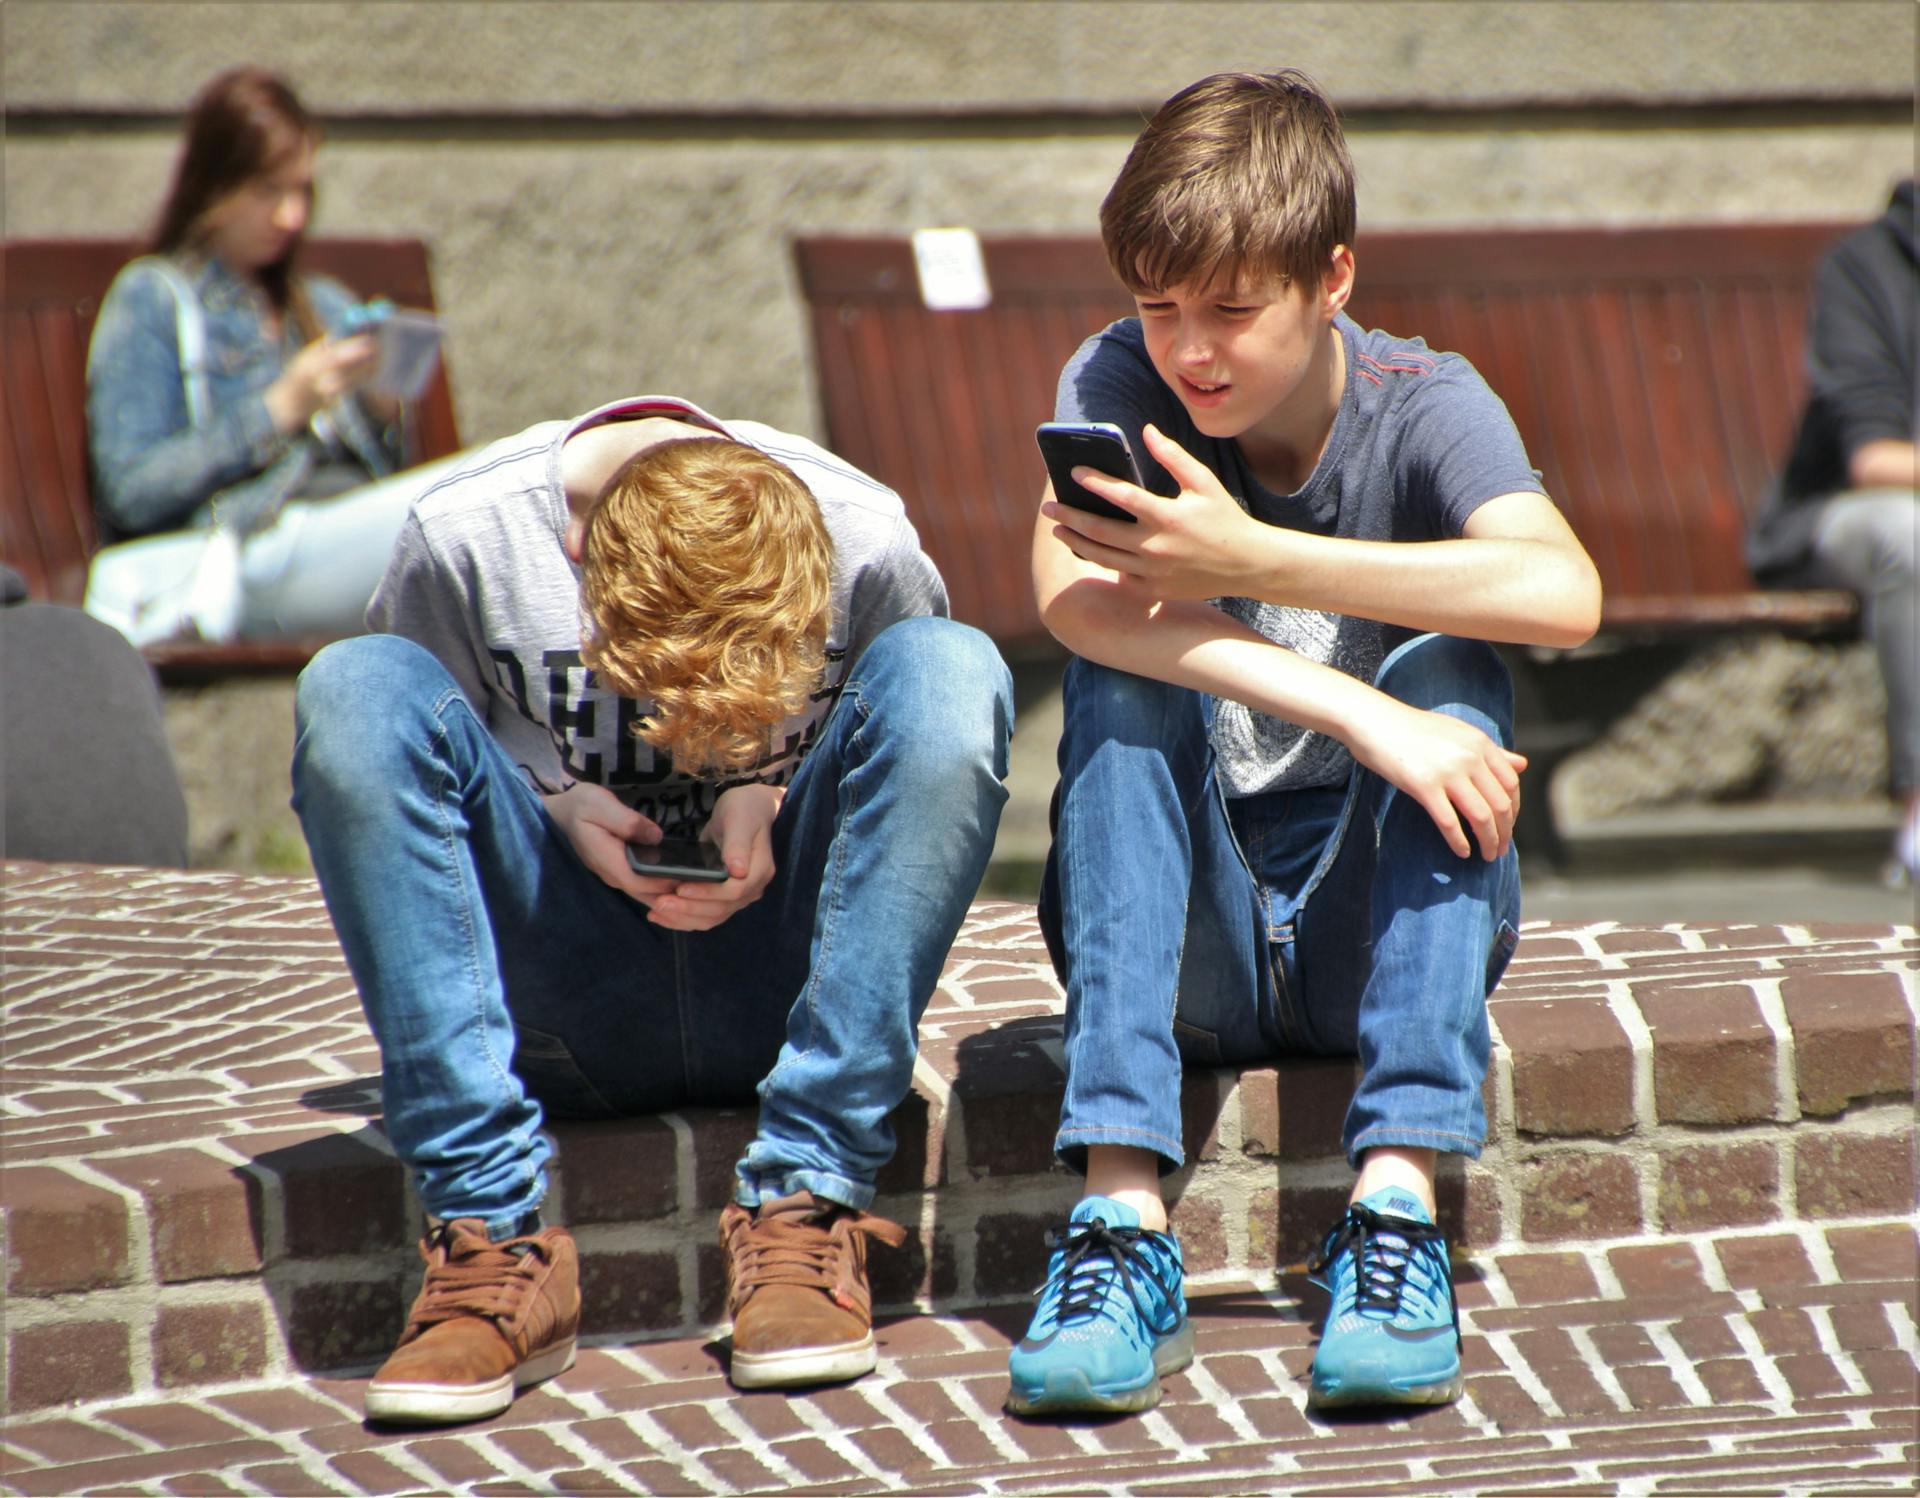 Teen Tech: Filter Apps for Teens